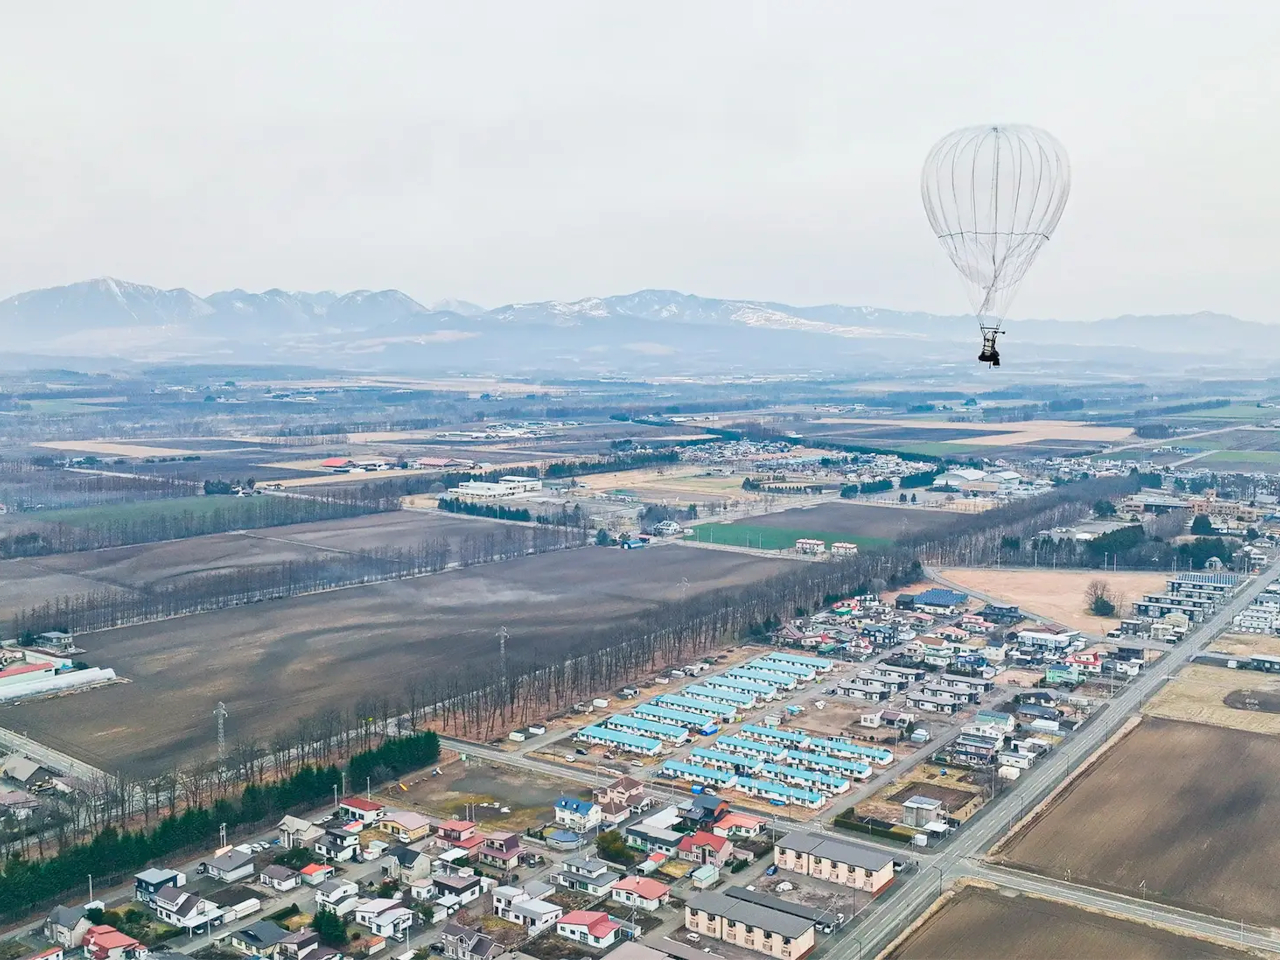 気球で成層圏への遊覧飛行目指す岩谷技研、4億円を調達--累計で約20億円